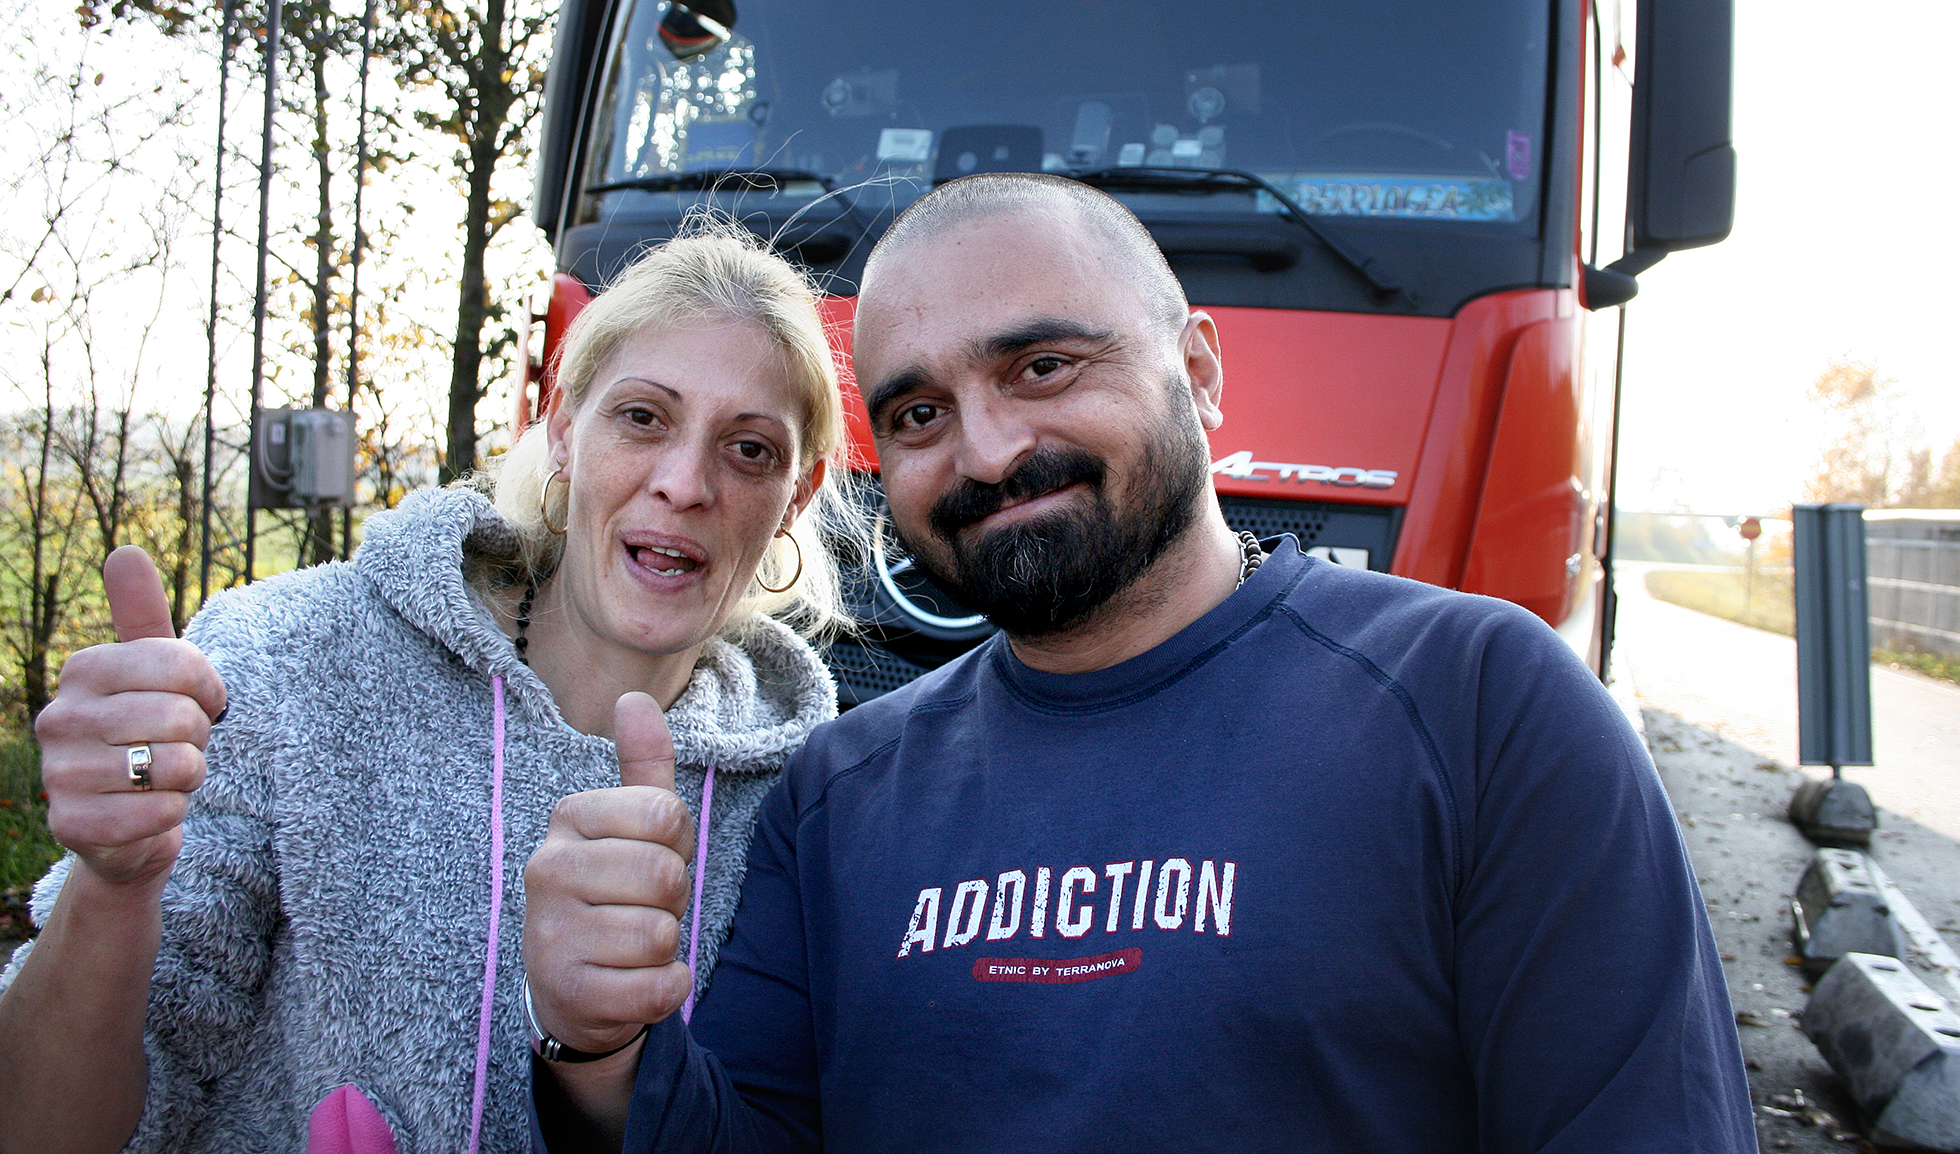 Elena och Gigel från Rumänien gjorde tummen upp efter godkänd kontroll innan de körde vidare. De är gifta med varandra och kör båda ekipaget tillhörande Vos Logistics.